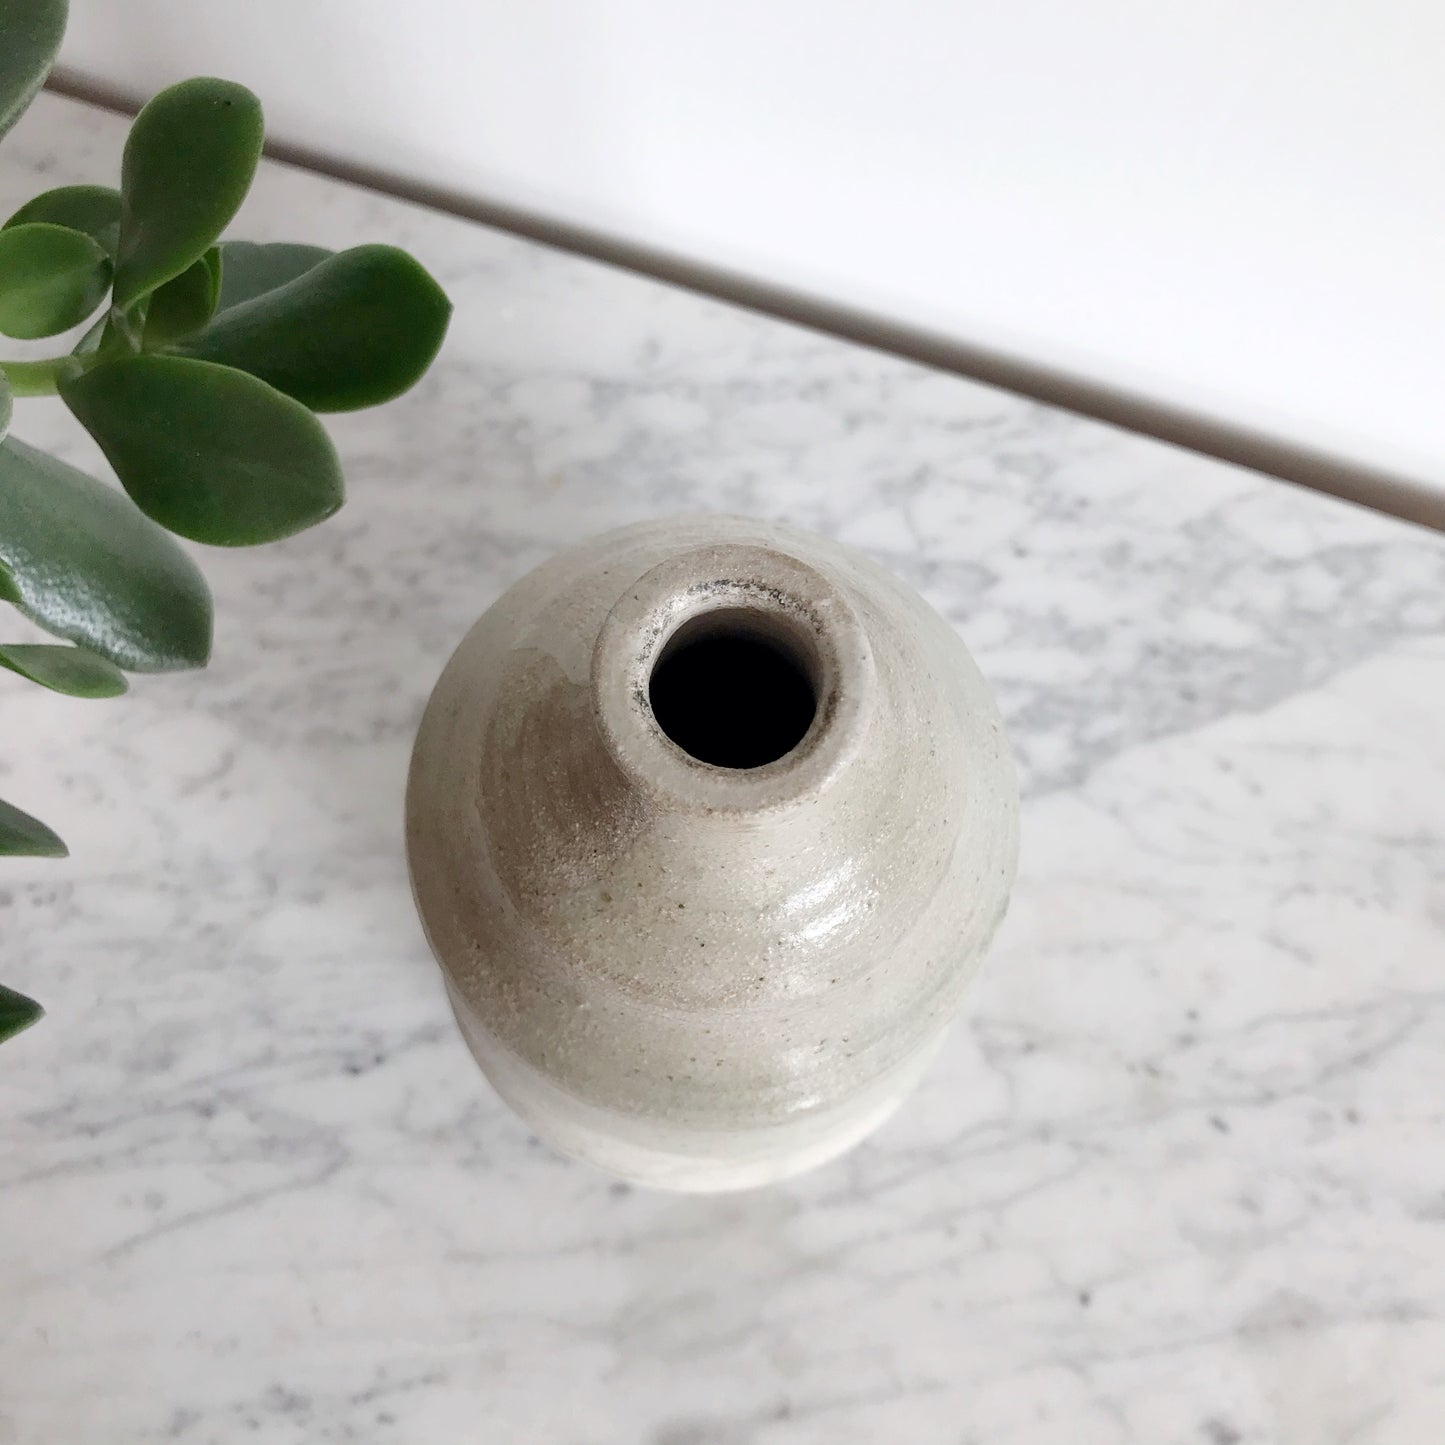 Tall Vintage Studio Pottery Vase